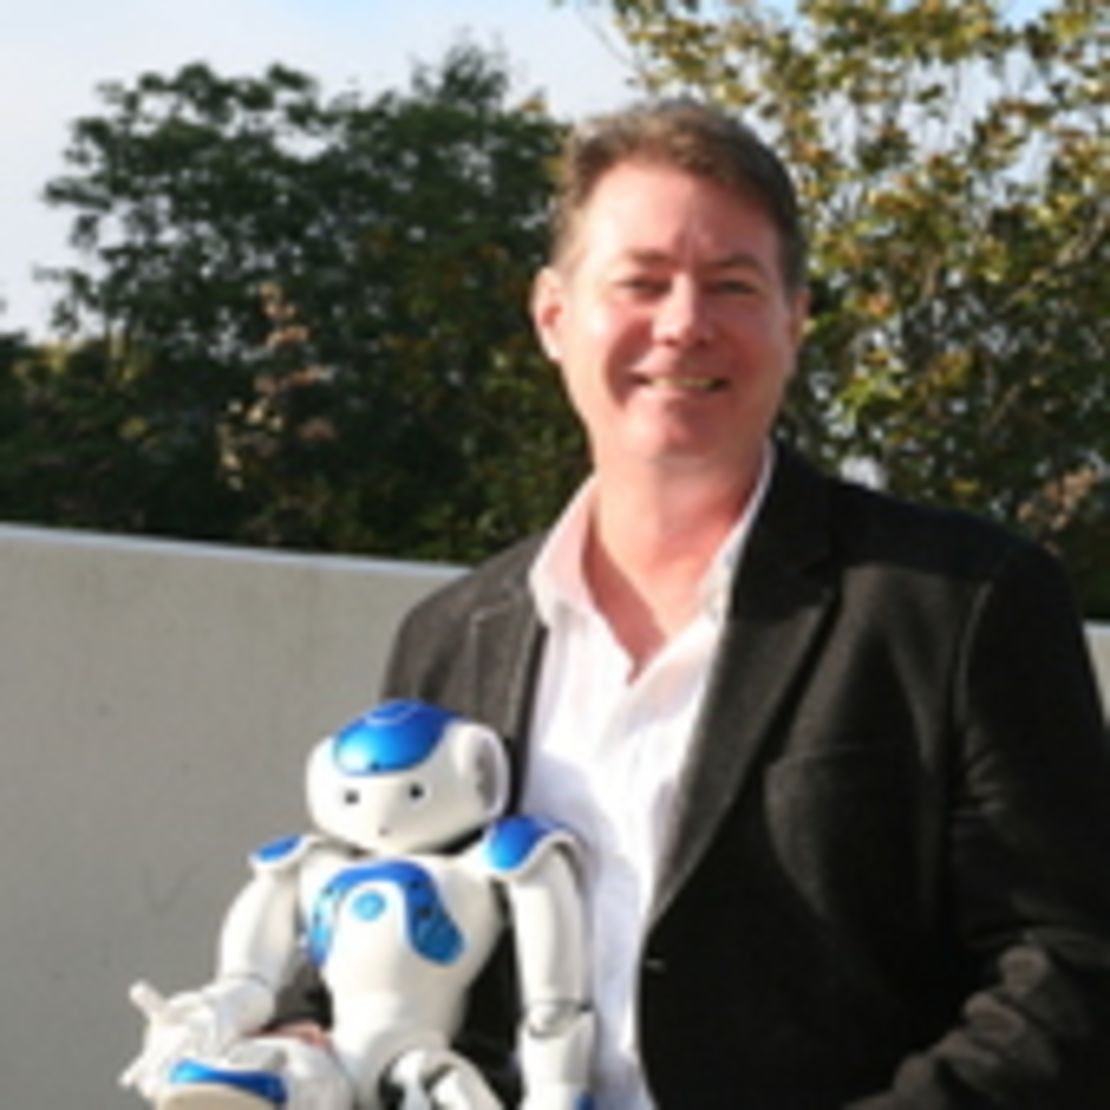 Sean Walsh, Robot Ethicist